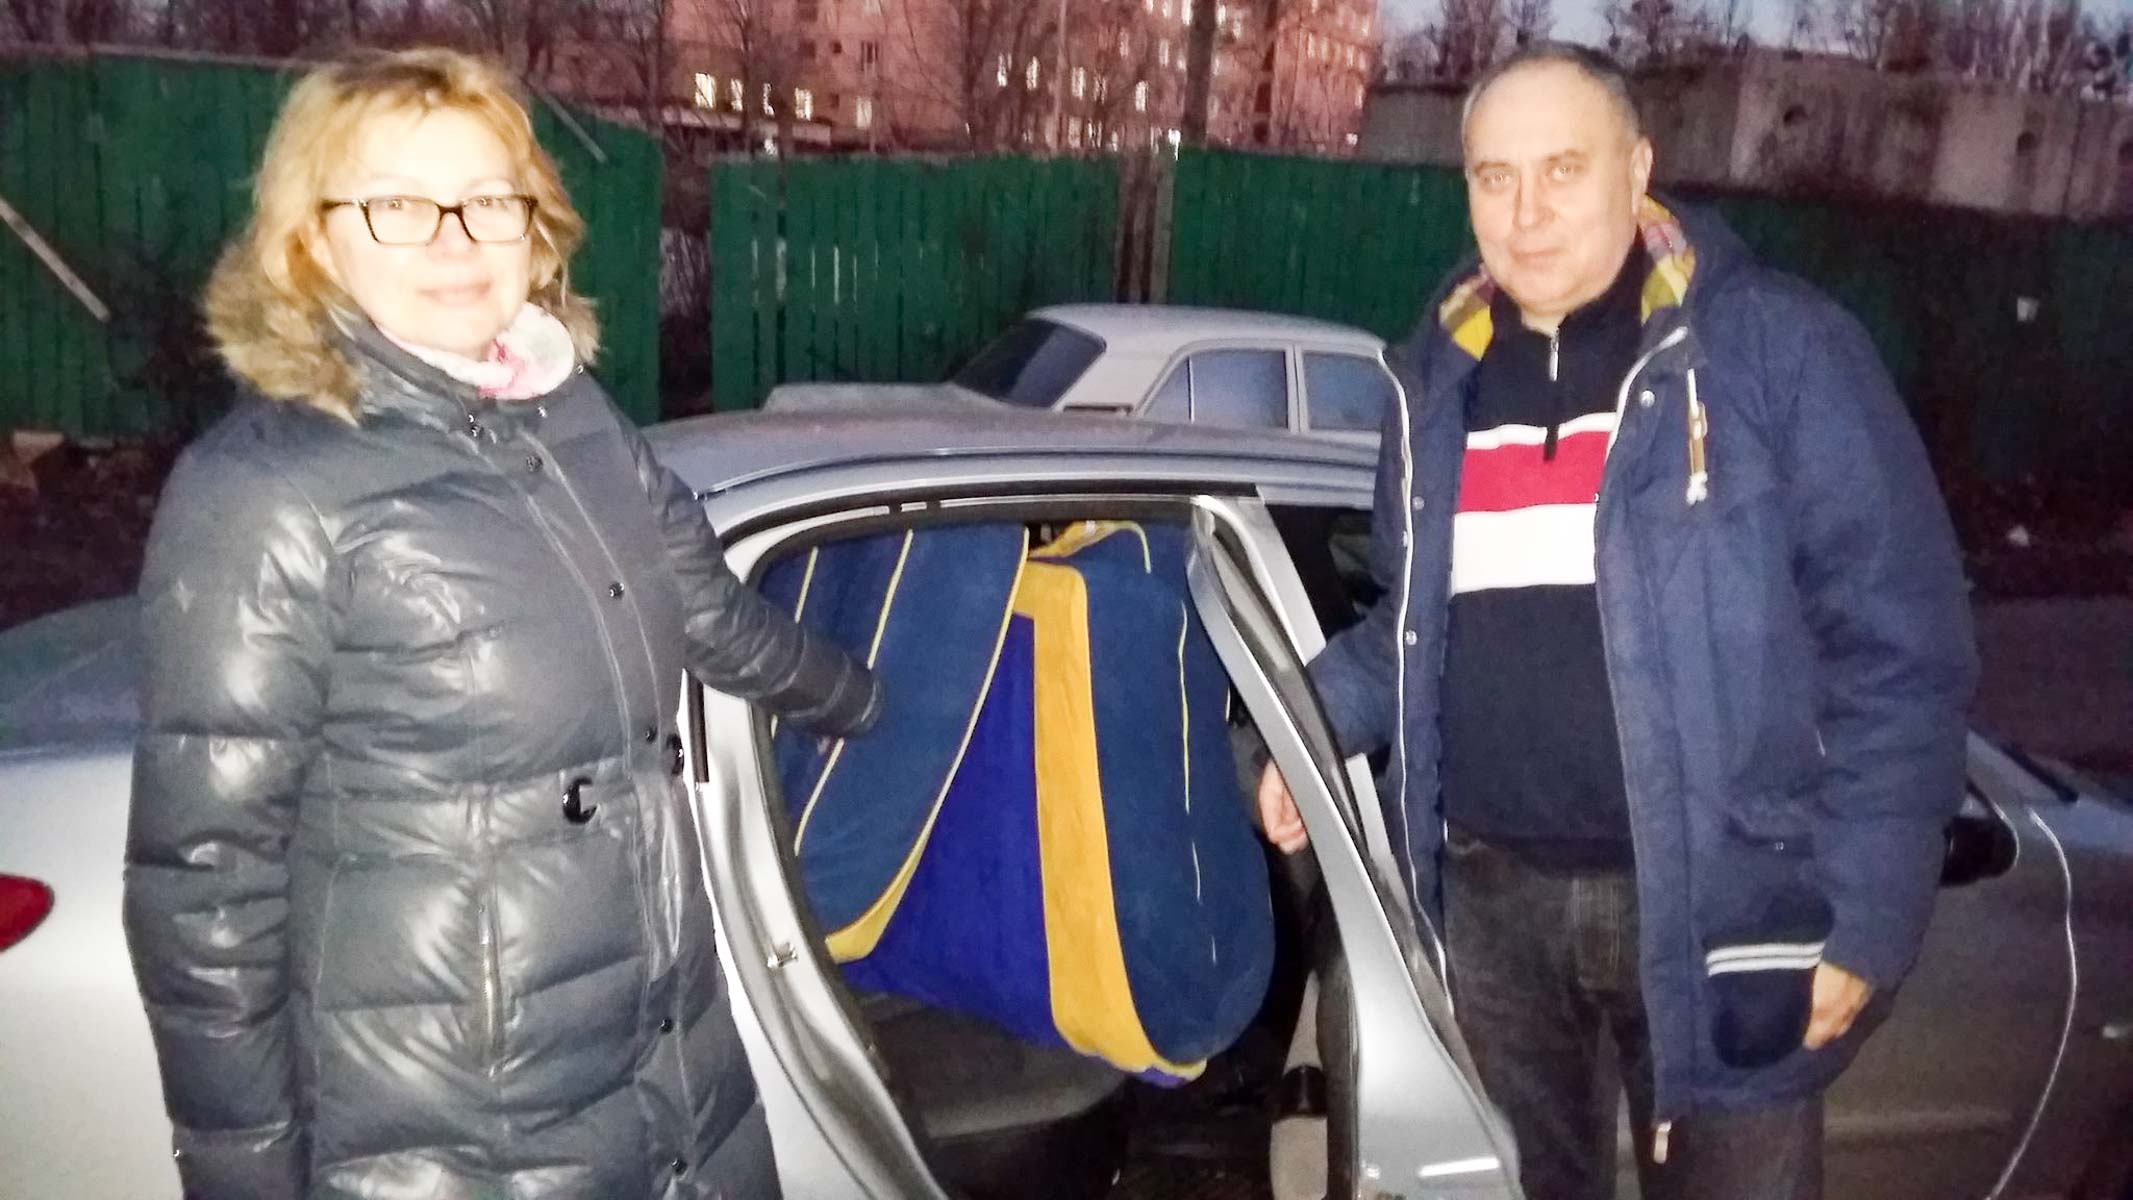 Państwo Martynienków z Kijowa zaofiarowali ogromny dwuosobowy materac o kolorach patriotycznych